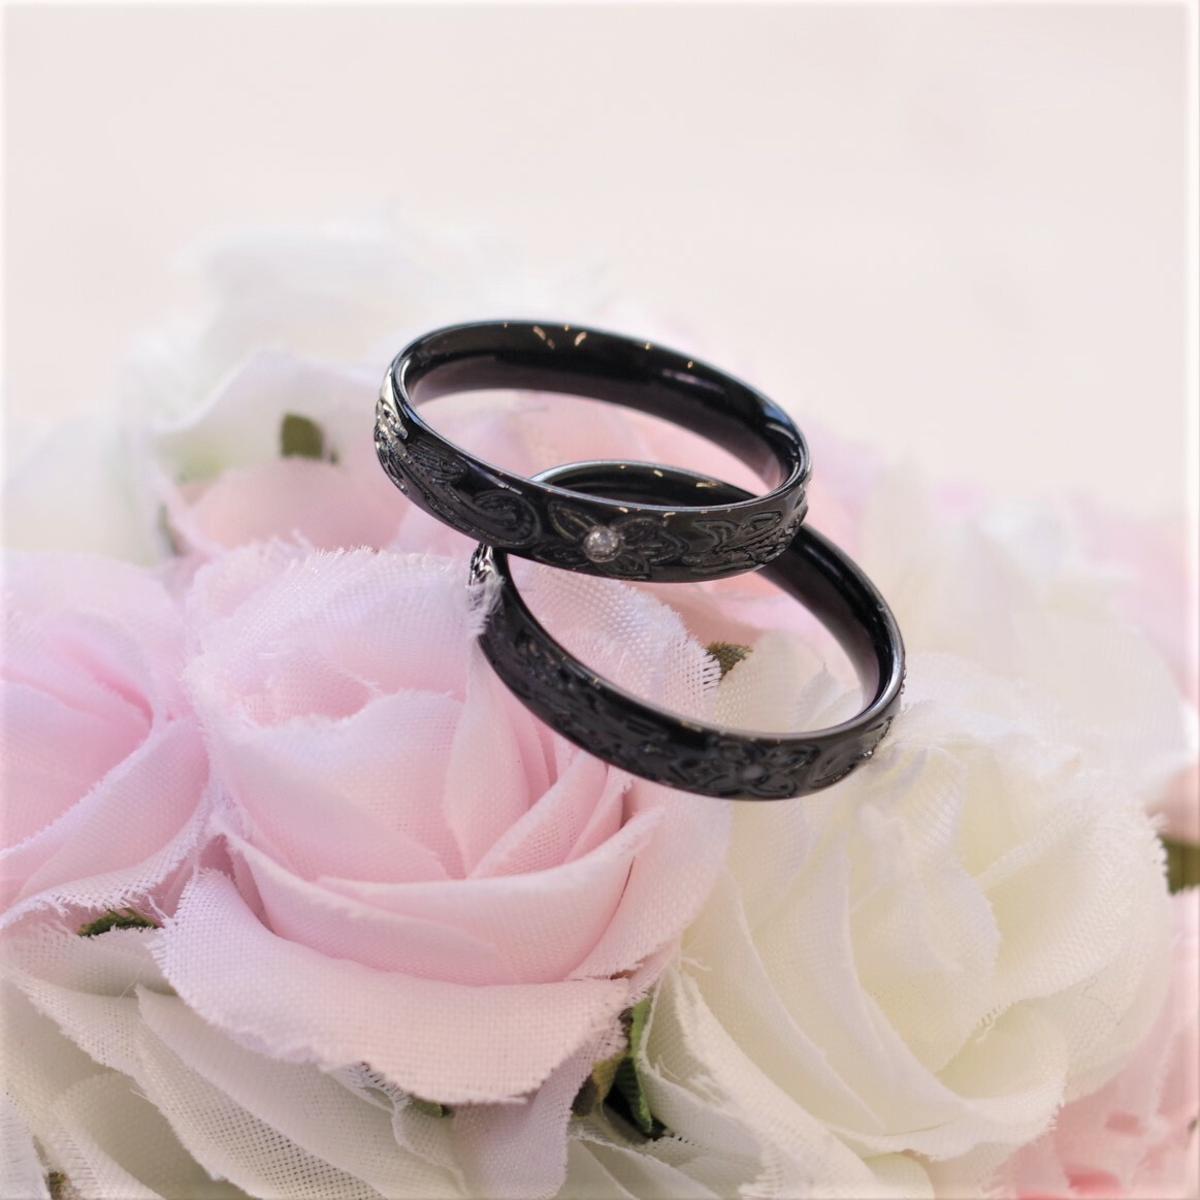 【新作・ブラックハワイアンペアリング】名入れ・刻印ができる ステンレスリング サージカル 結婚指輪 【2本ペア価格】